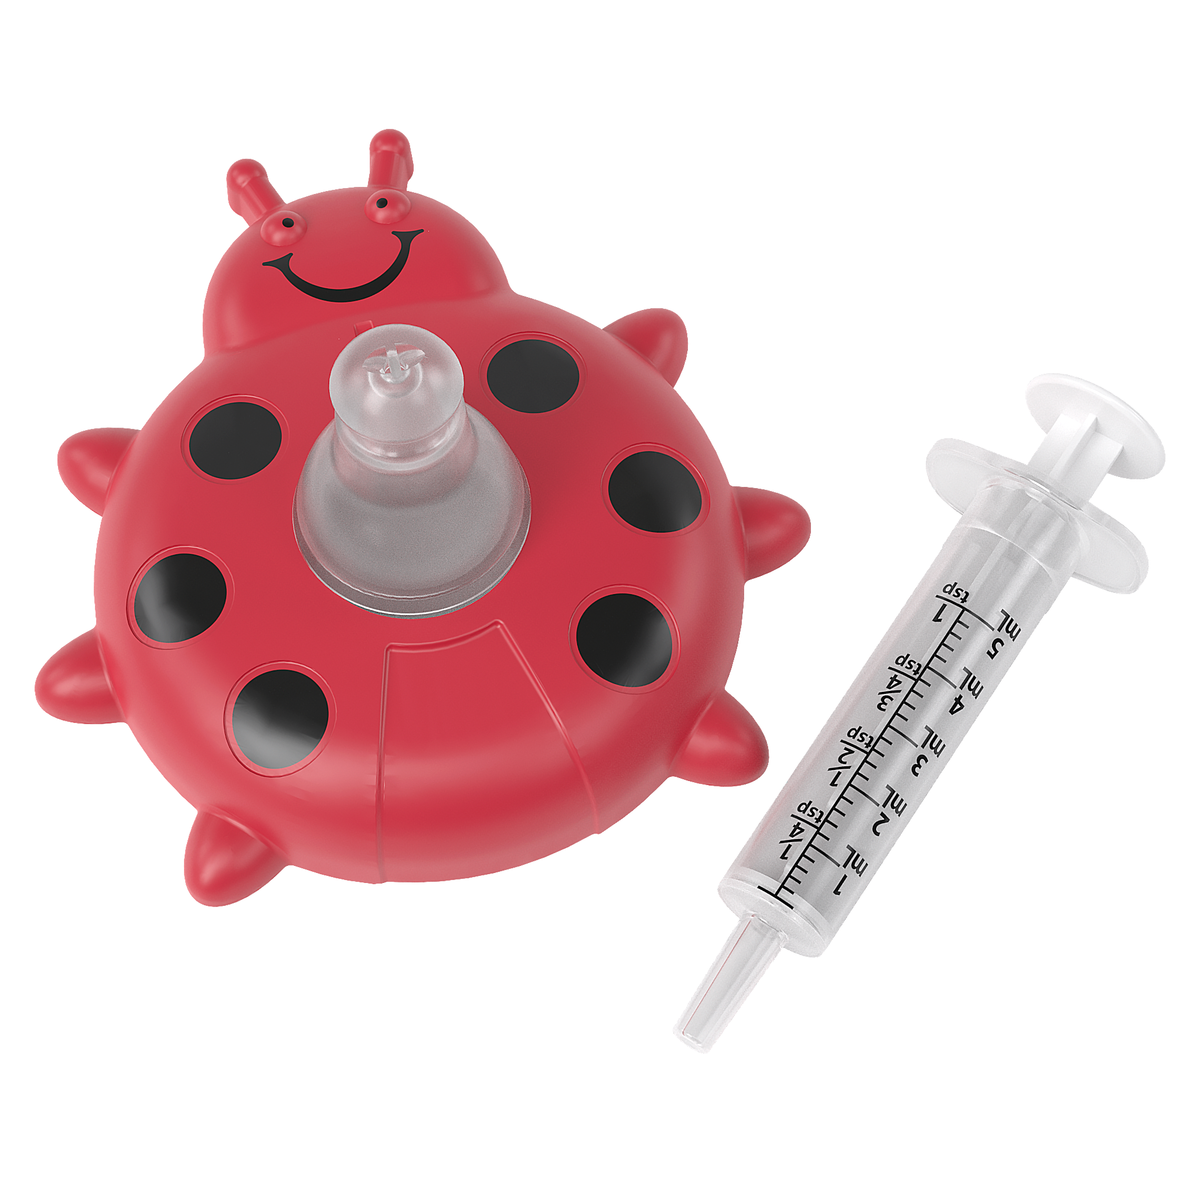 Front image of ladybug oral syringe